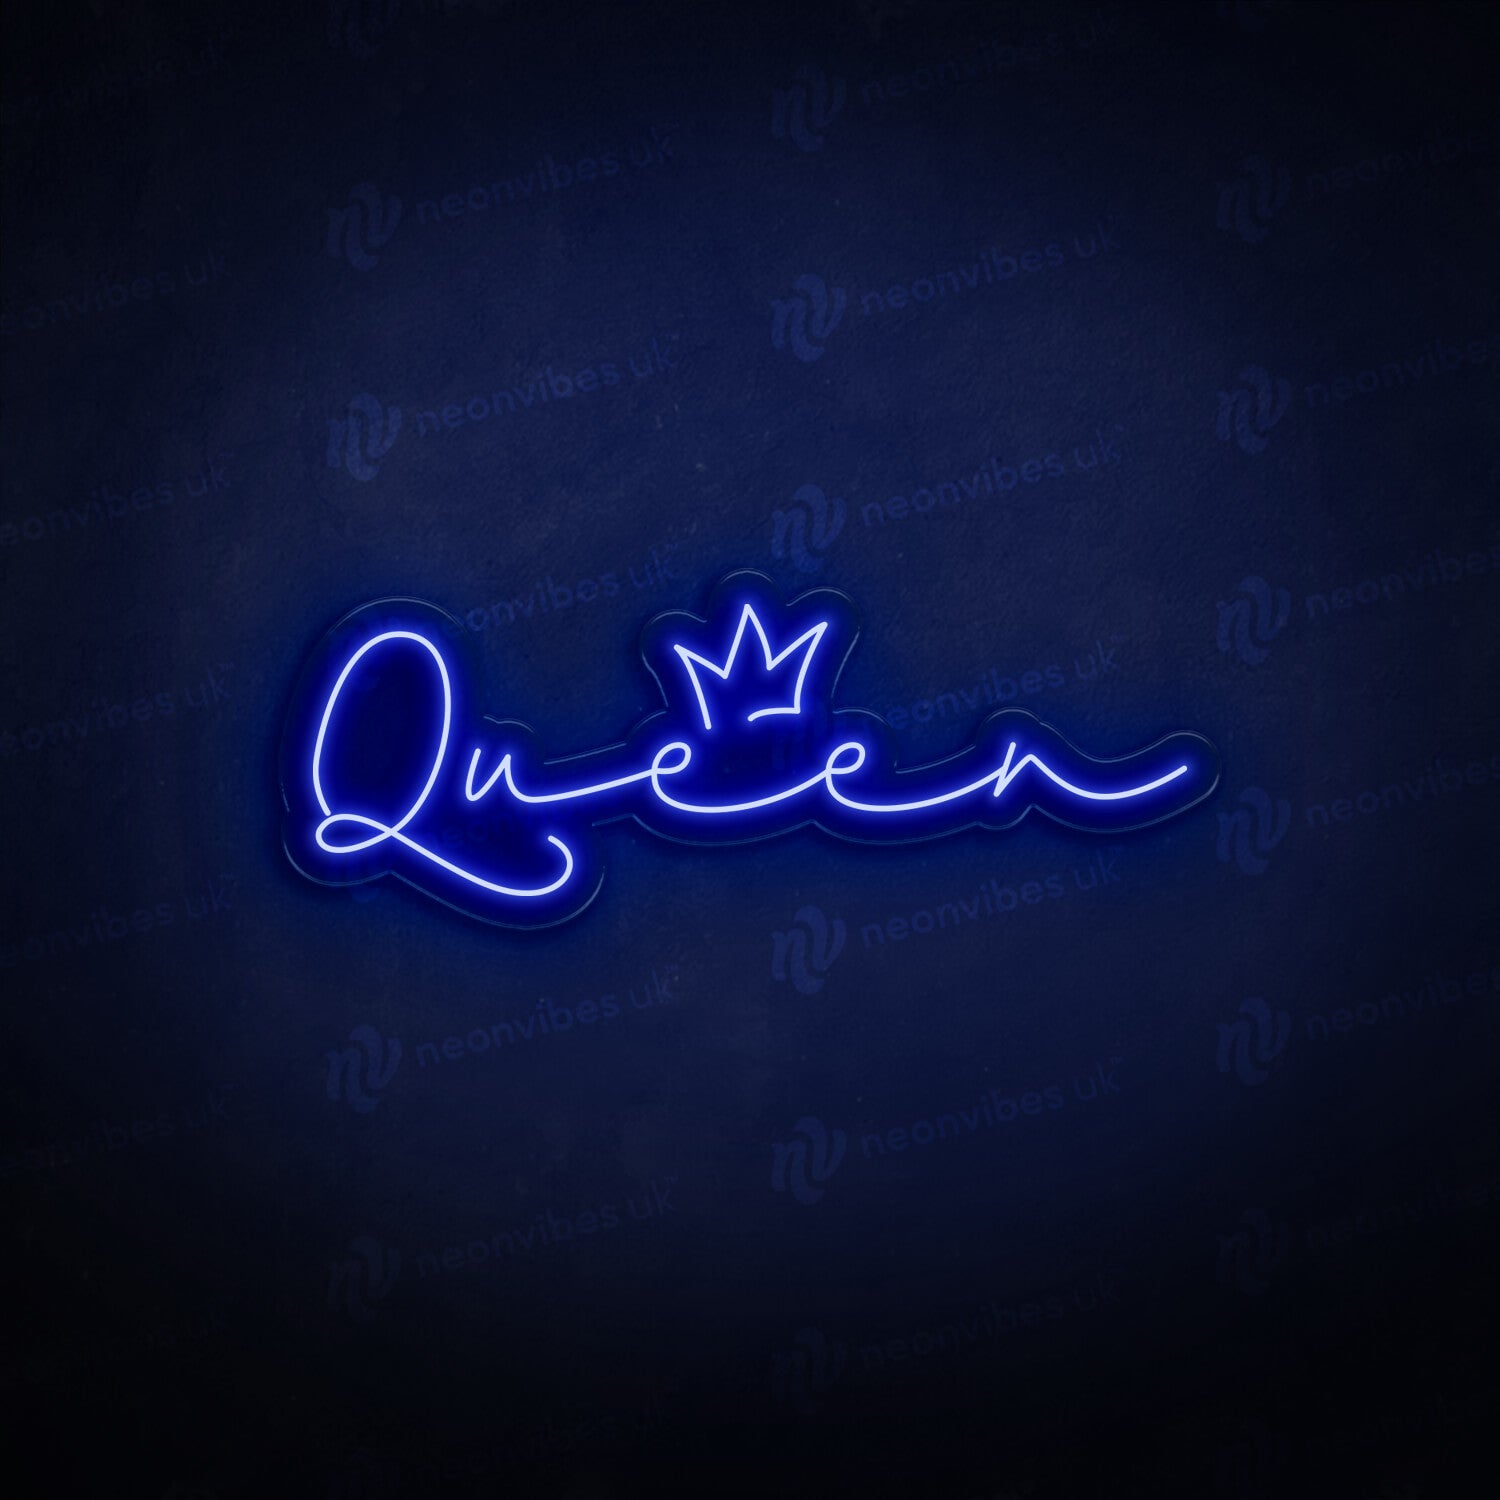 Queen & Crown neon sign